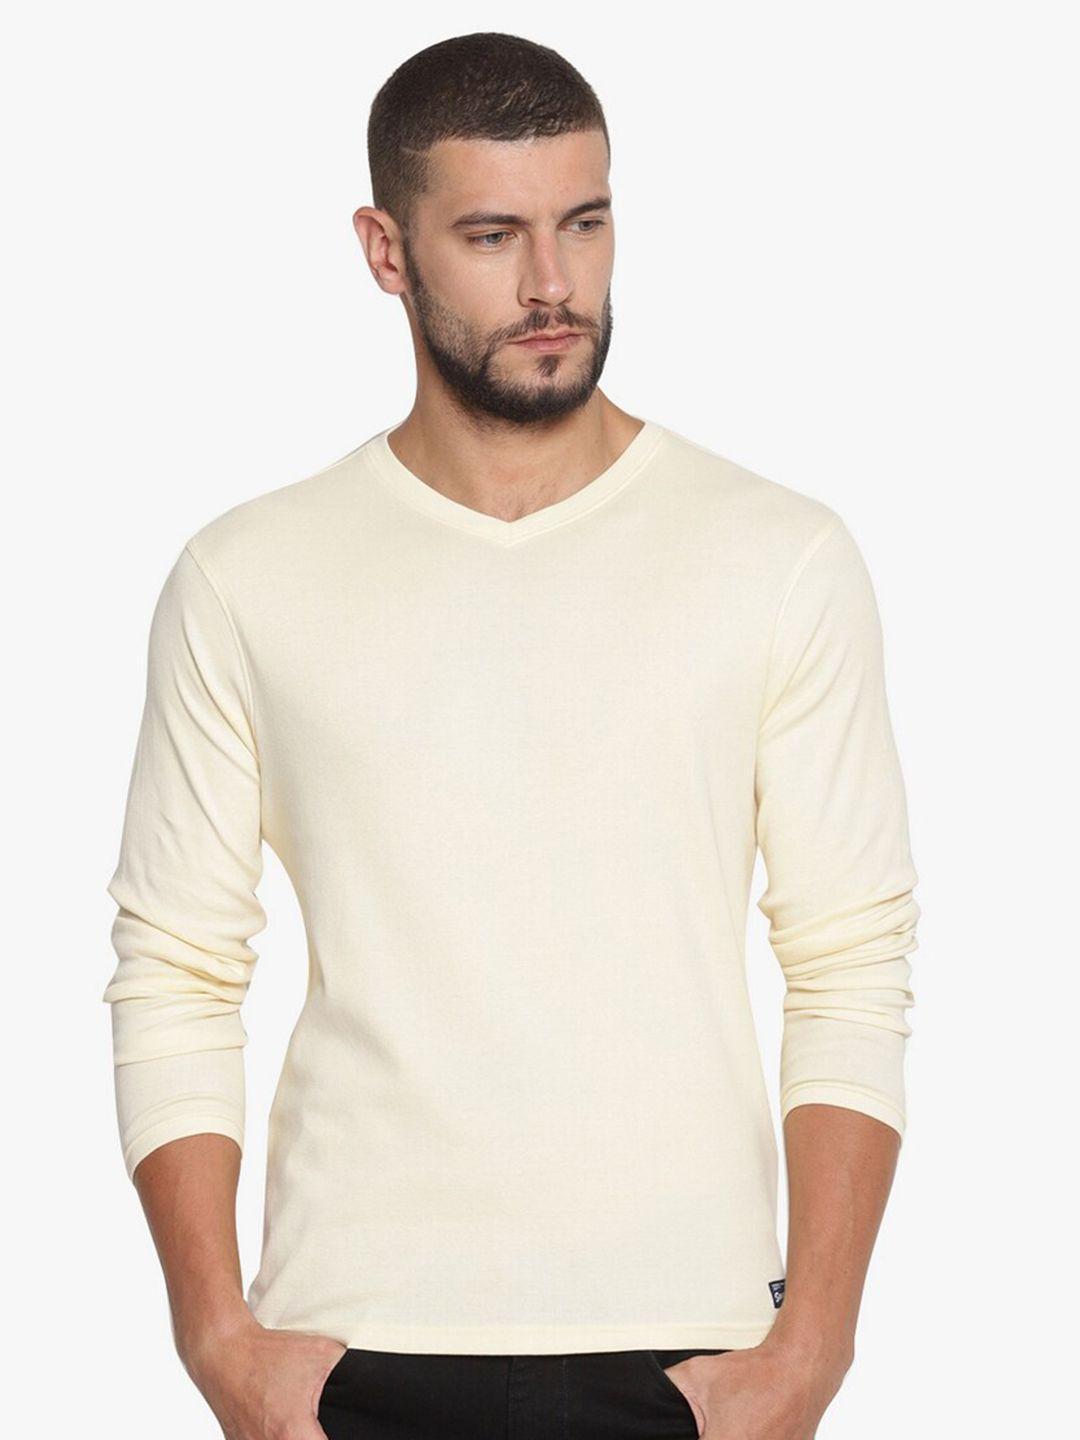 steenbok-men-off-white-v-neck-slim-fit-long-sleeves-t-shirt